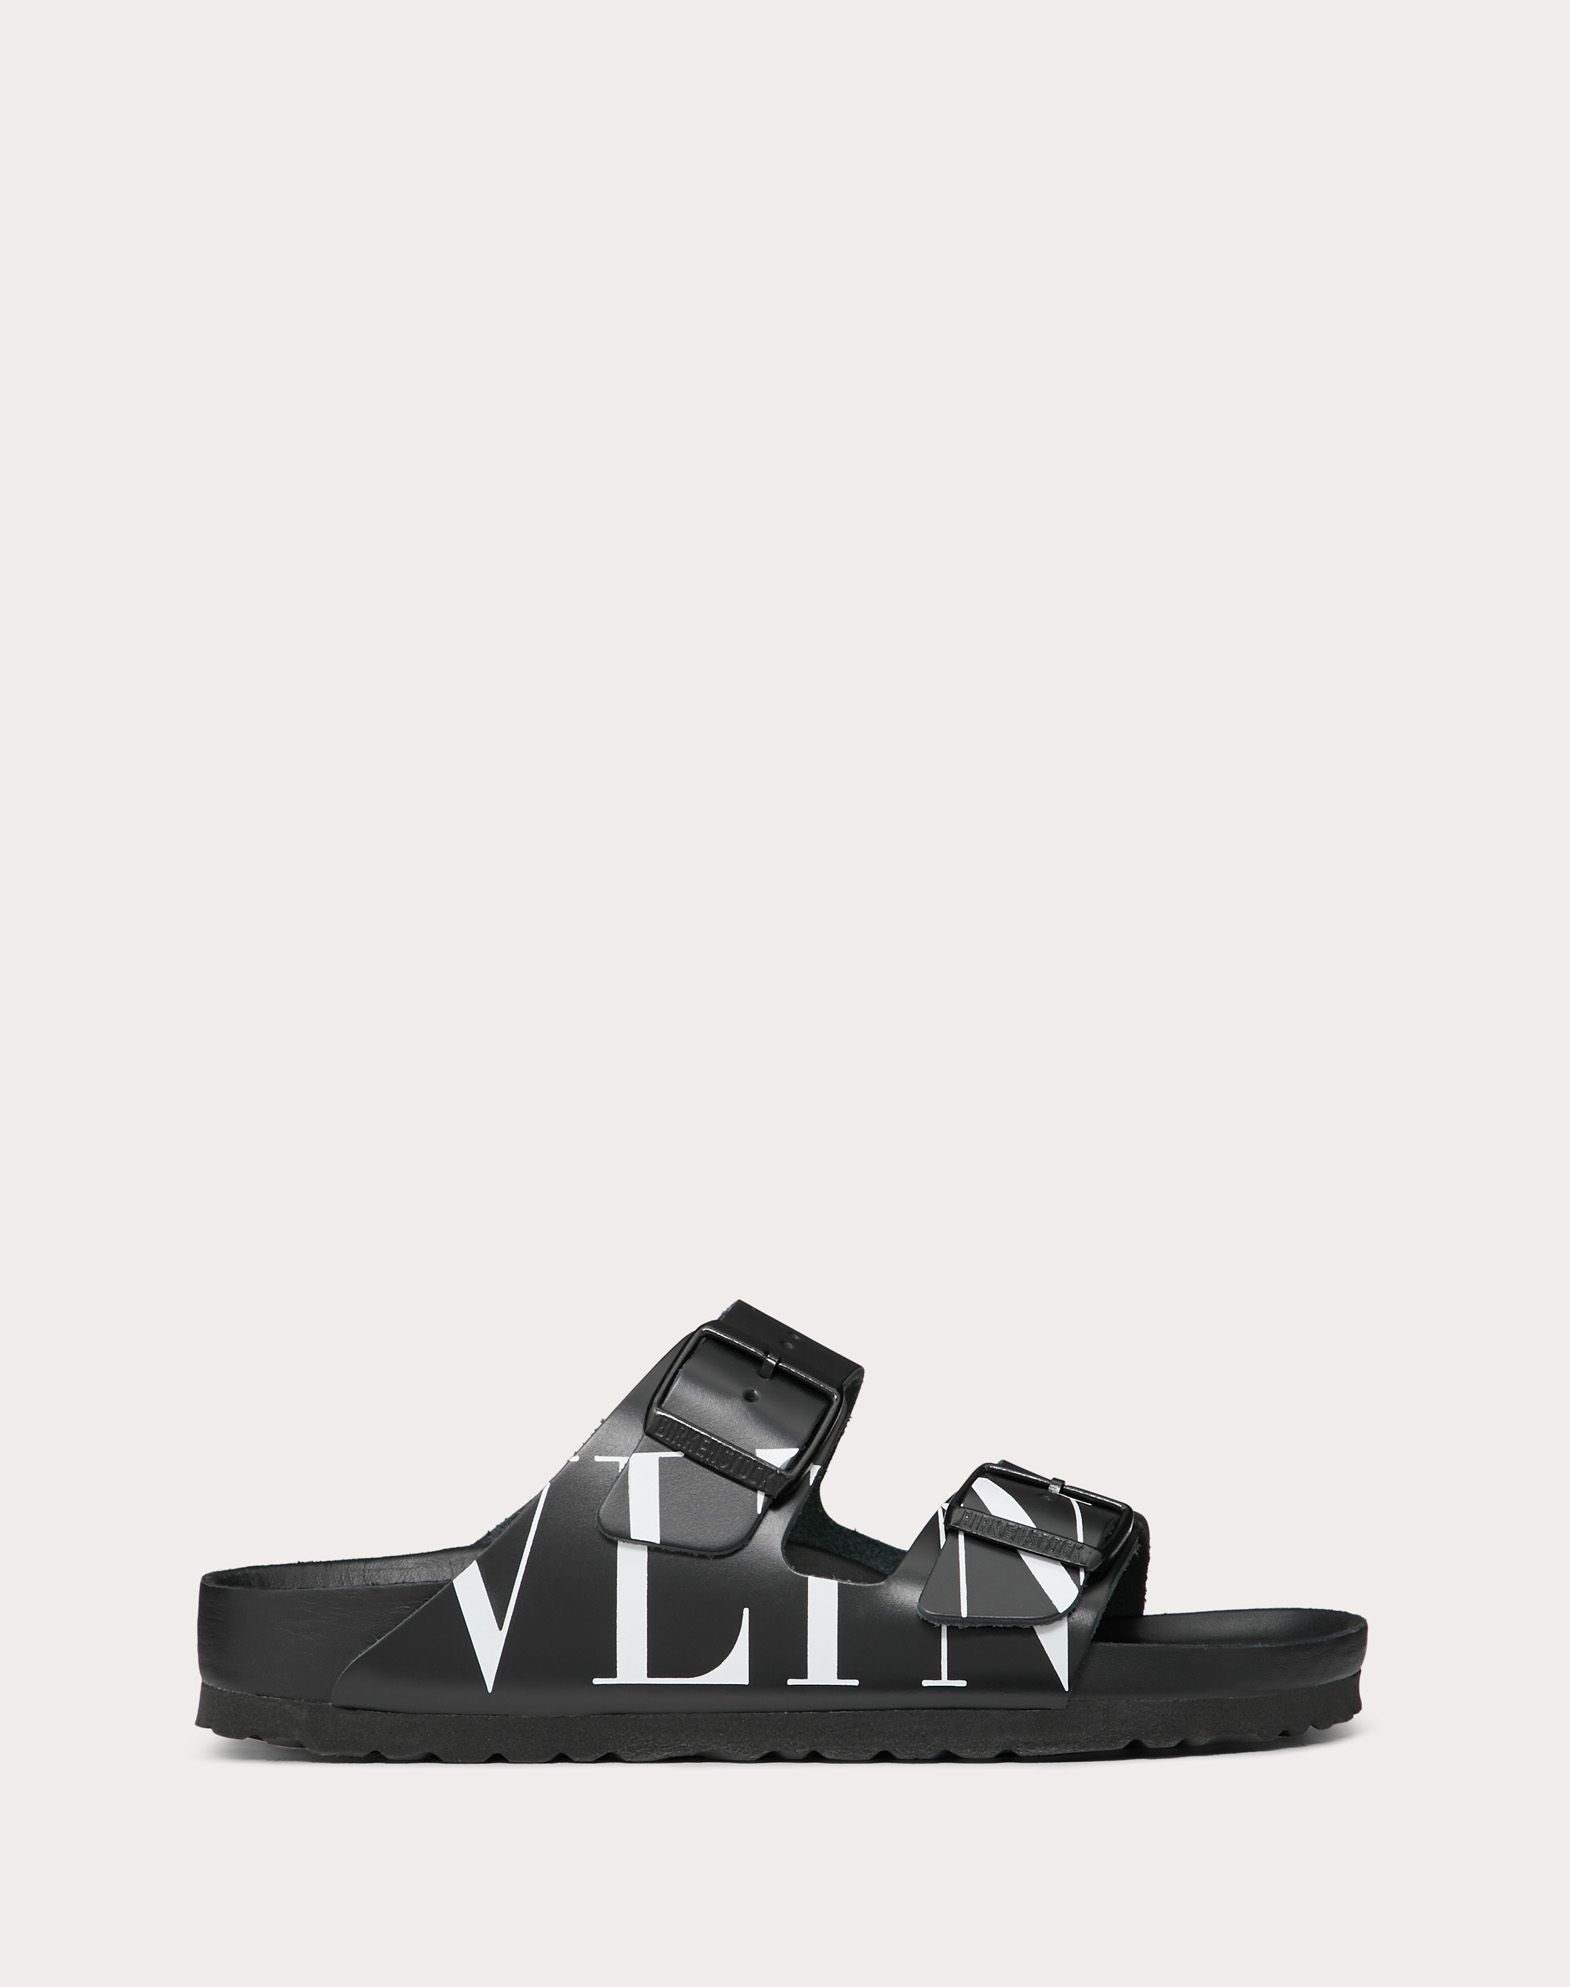 VLTN slide sandal in collaboration with 